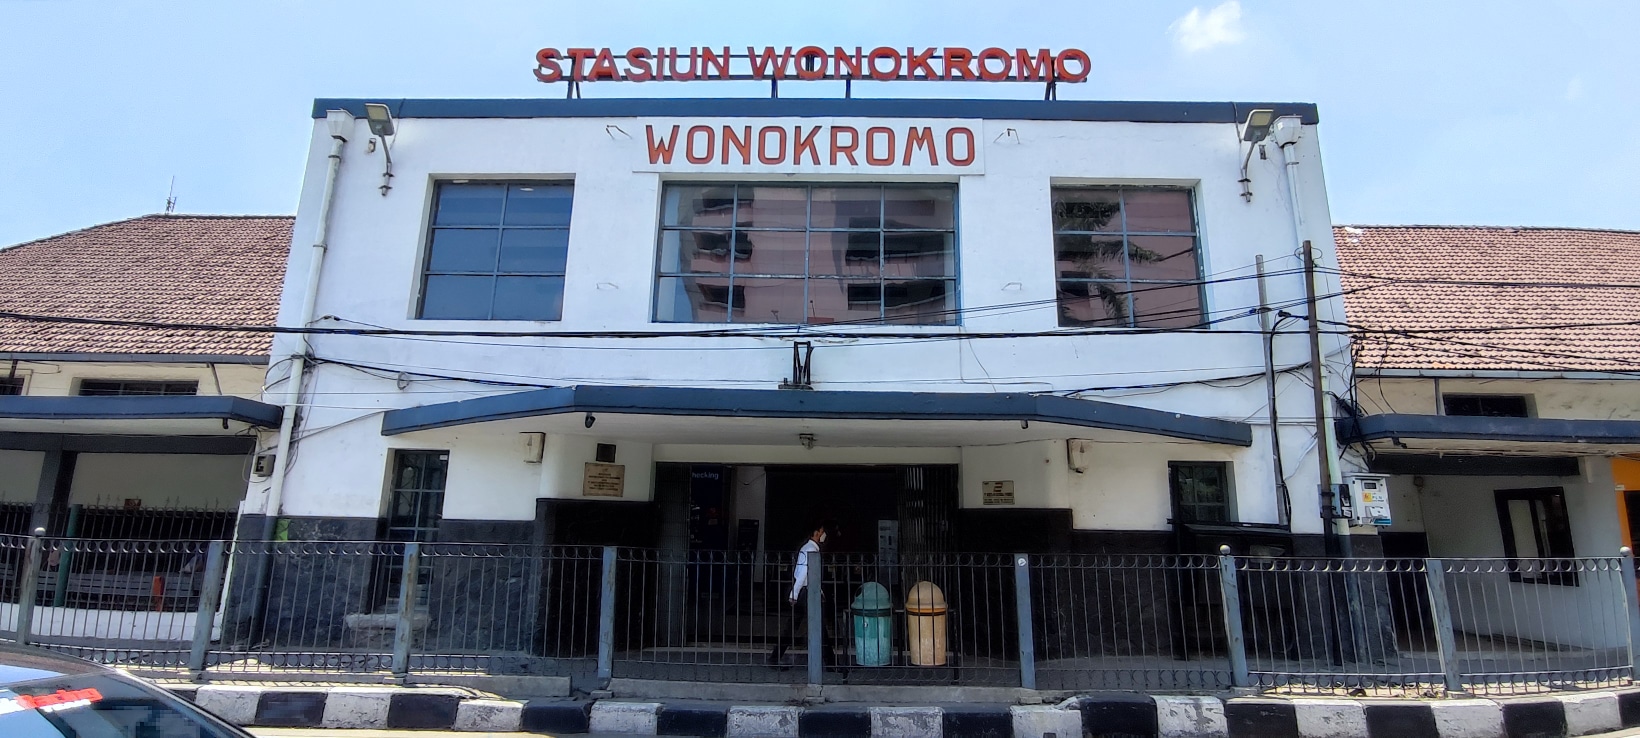 Stasiun Wonokromo